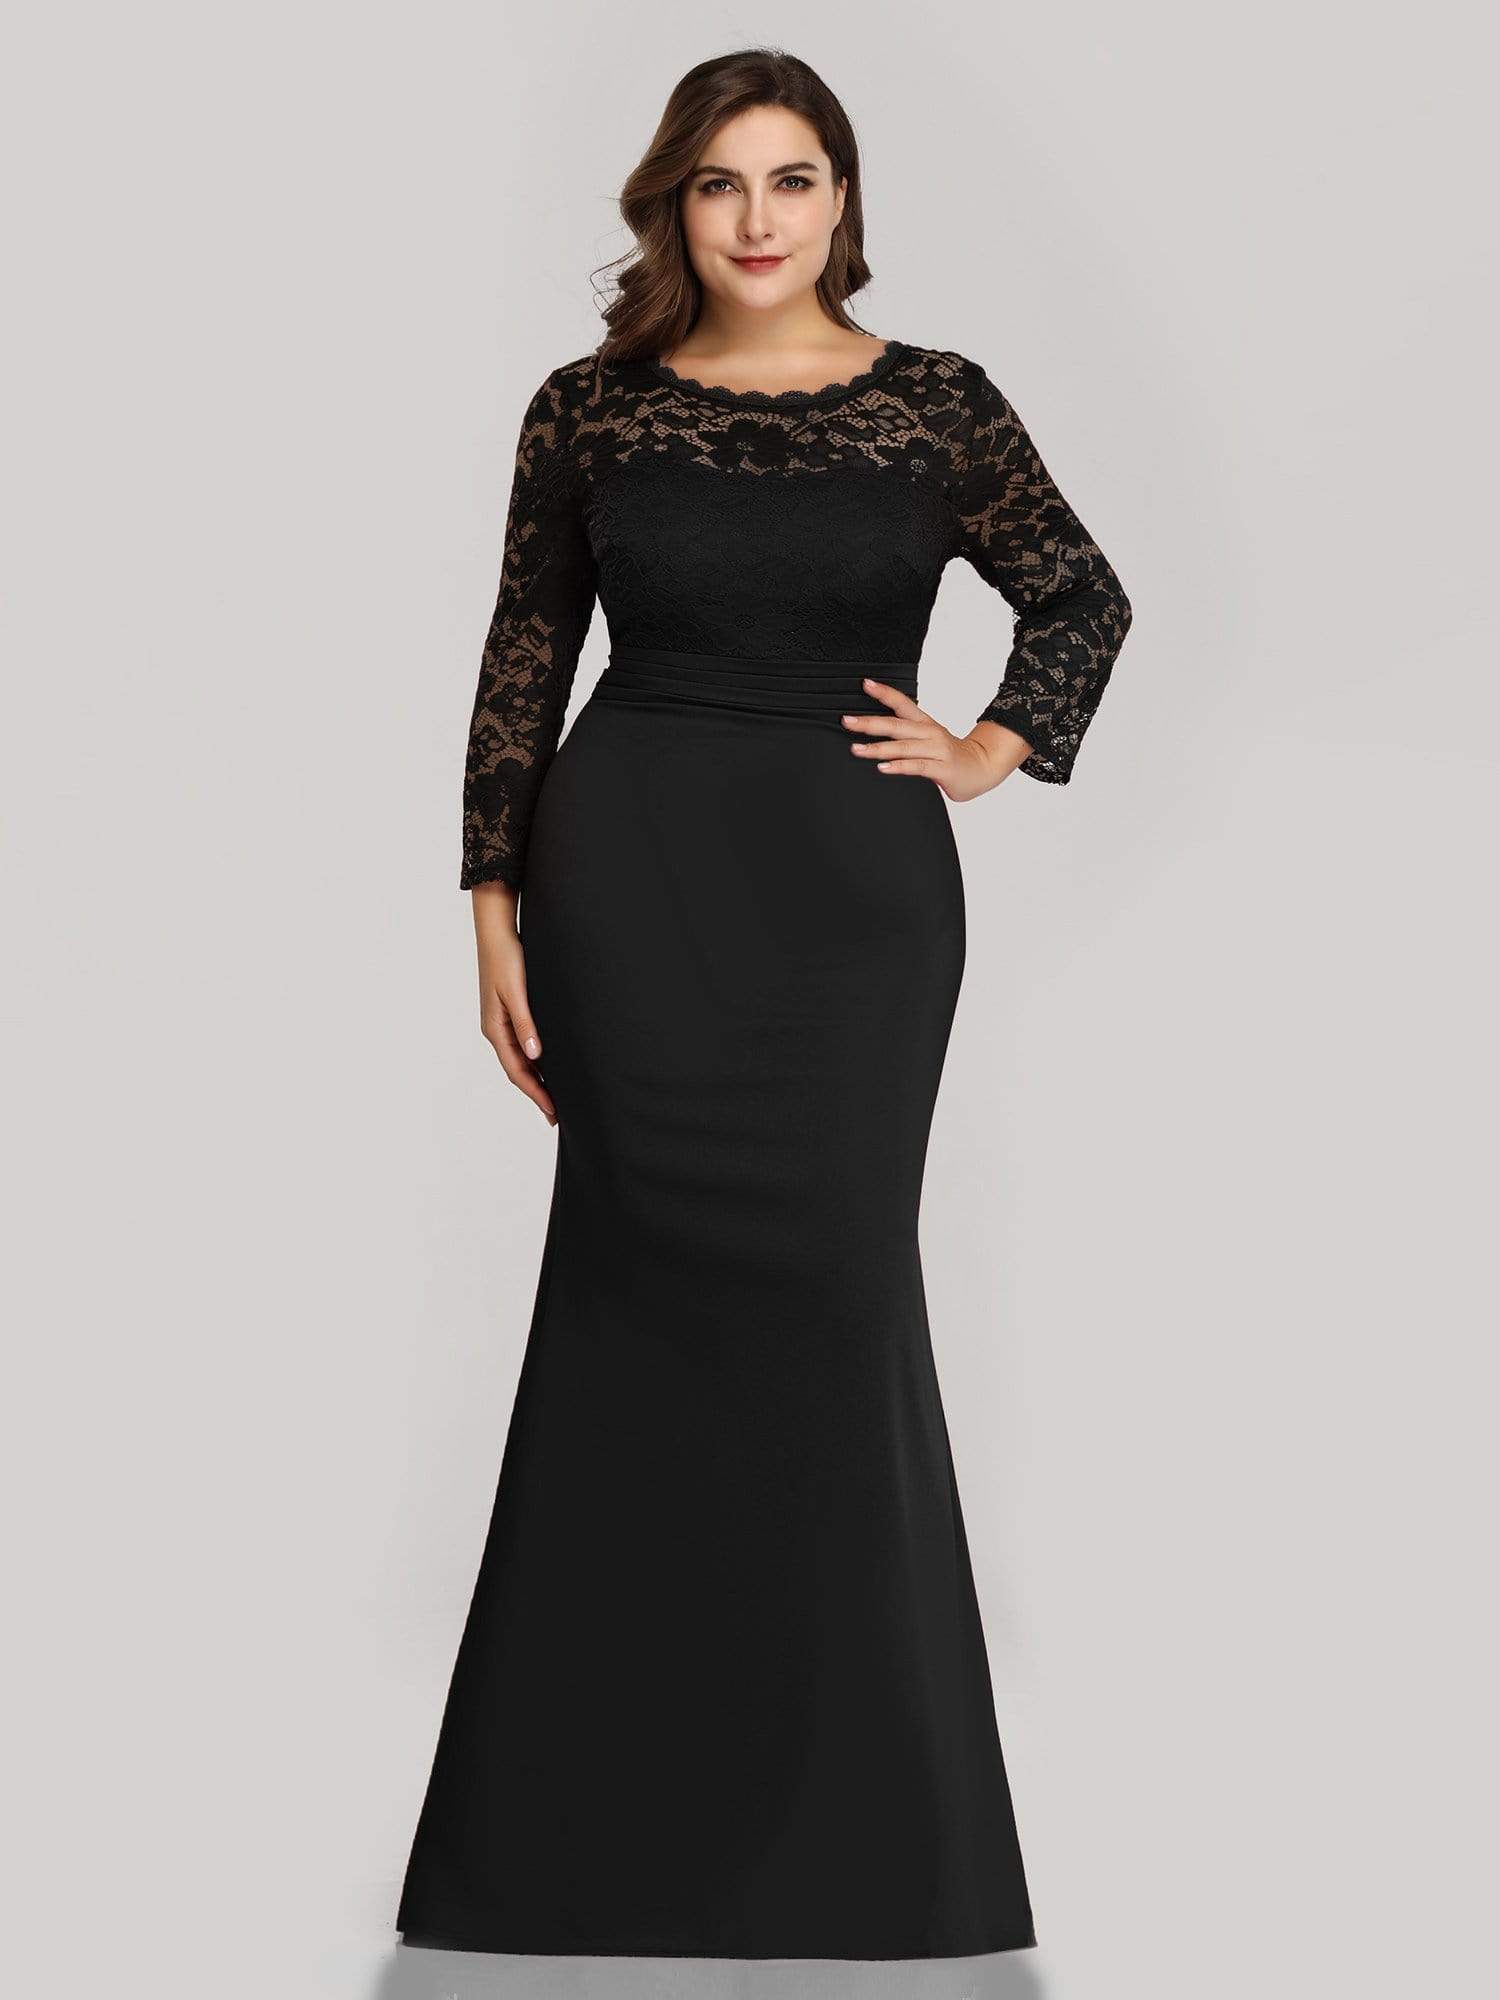 Plus Size Evening Dresses – Camille La Vie, 43% OFF